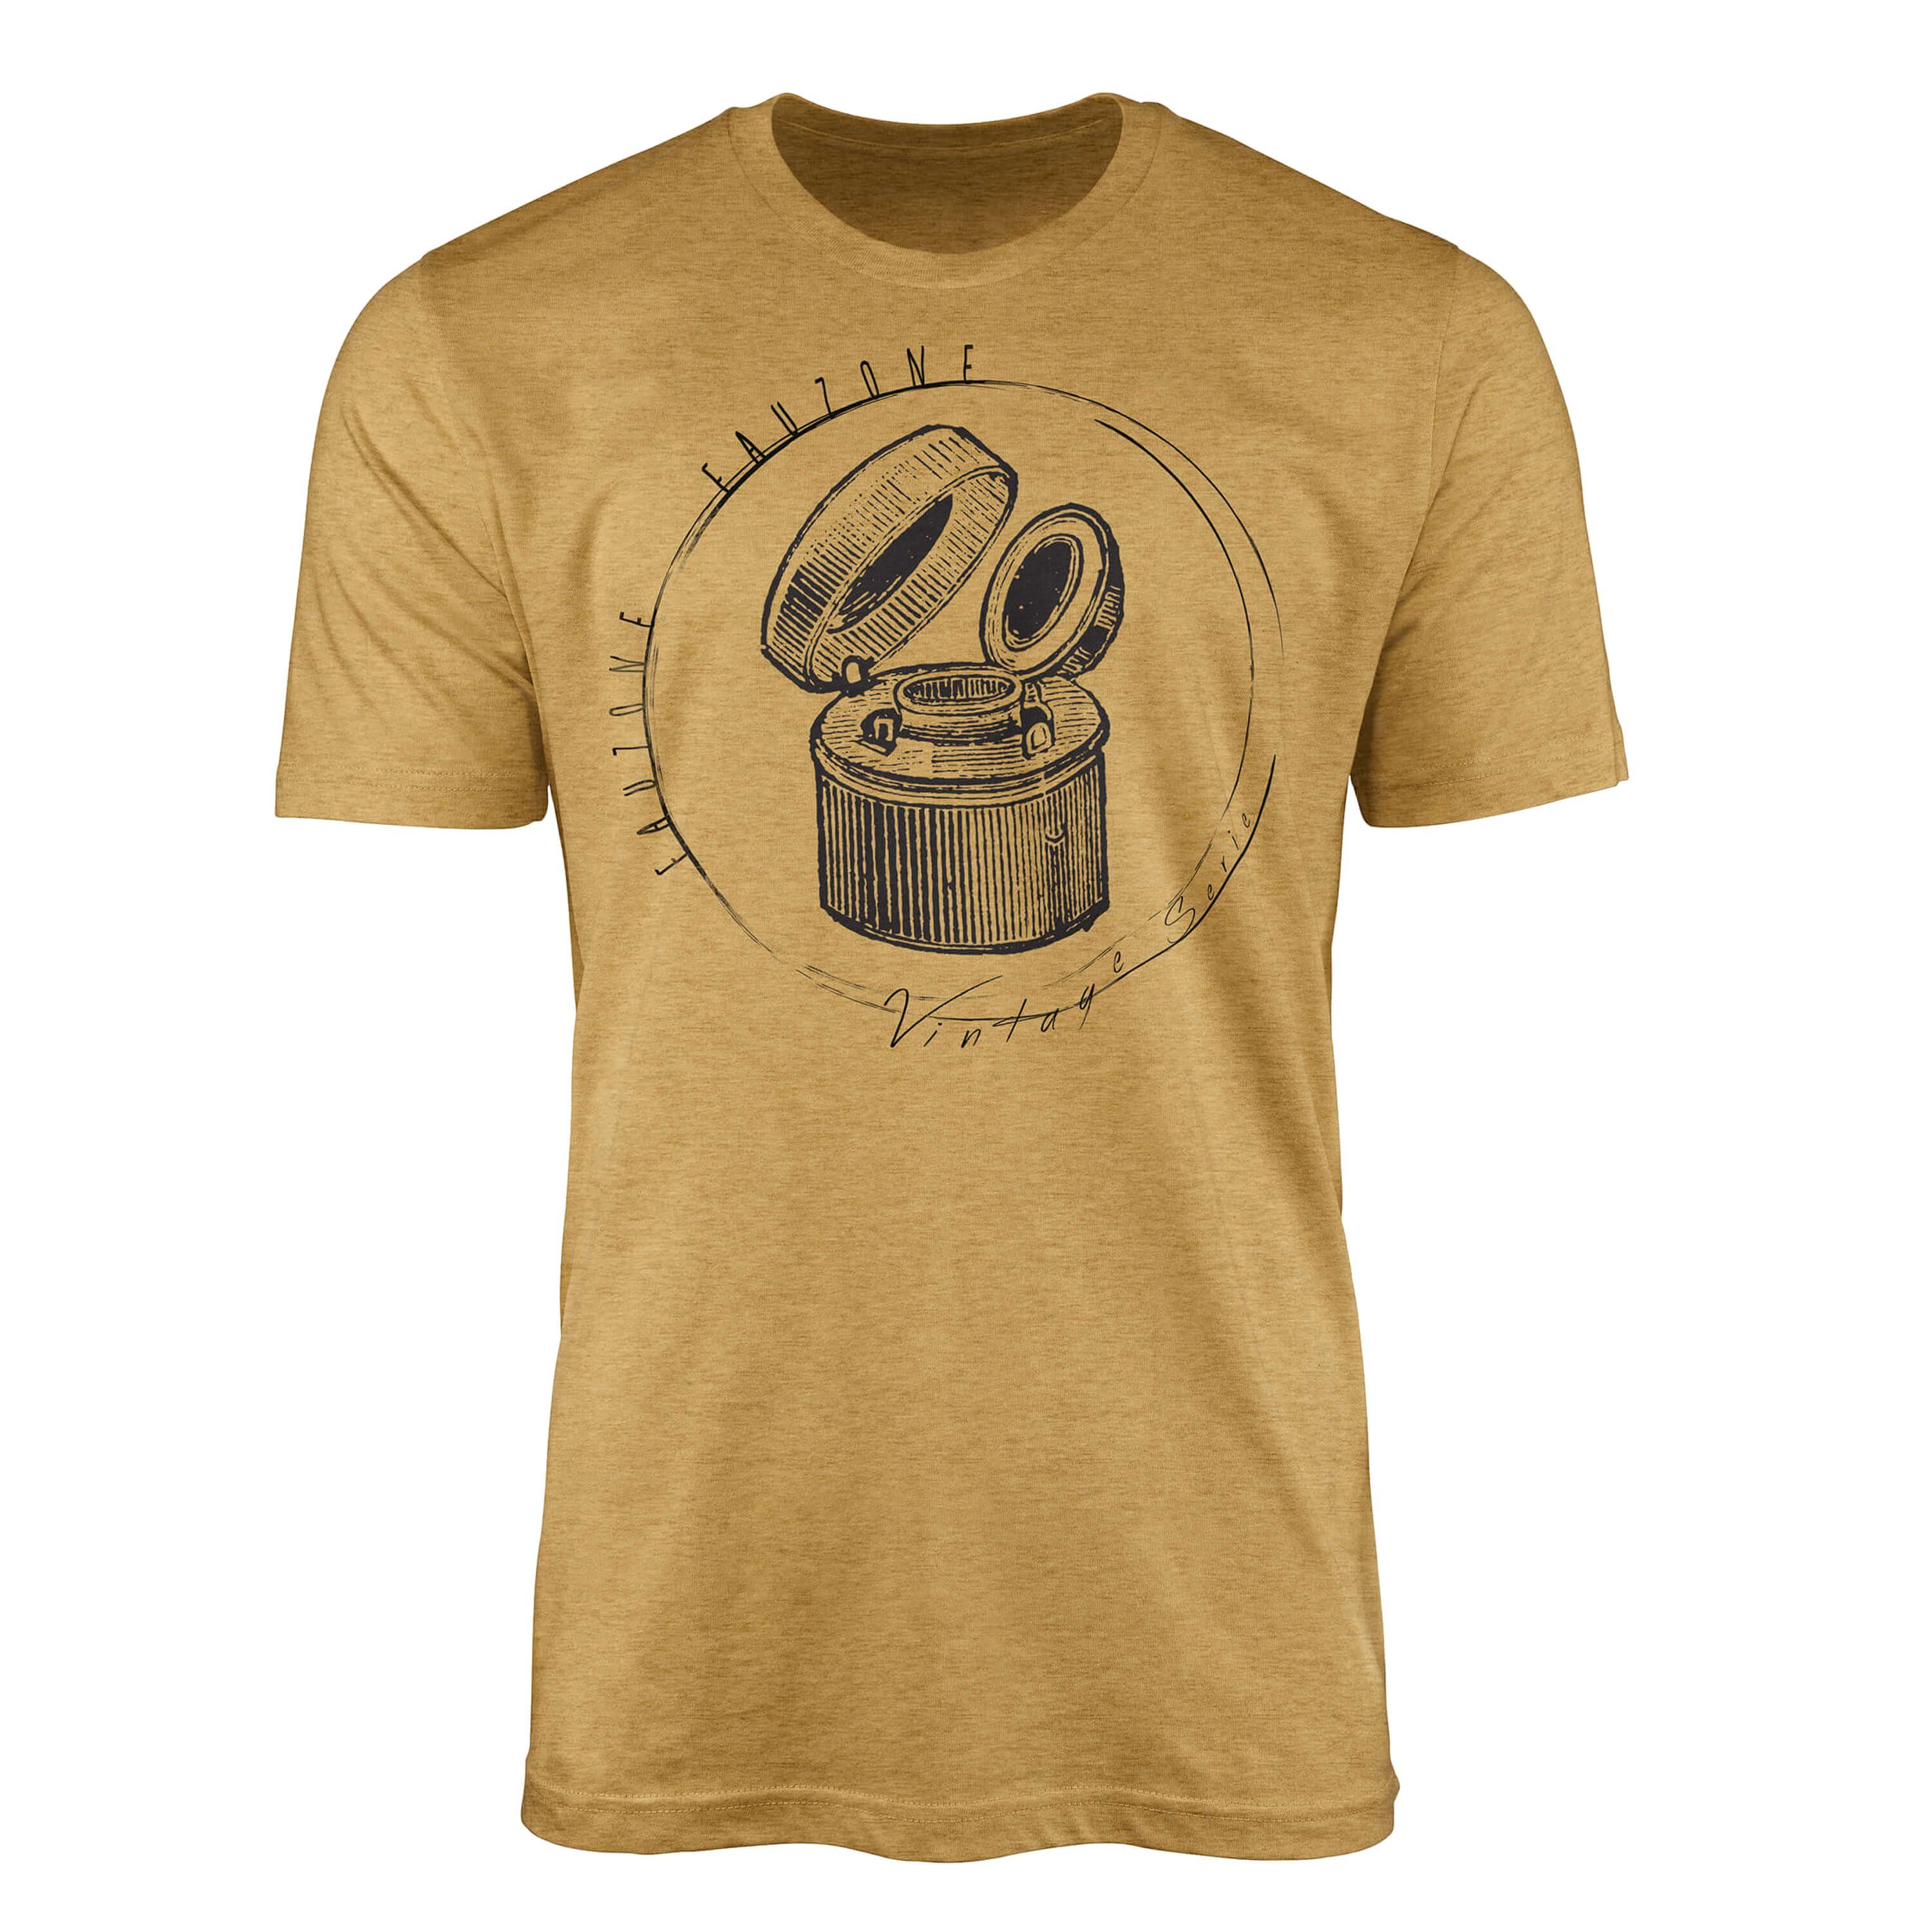 Sinus Art T-Shirt Vintage Herren Tintenfass Gold T-Shirt Antique